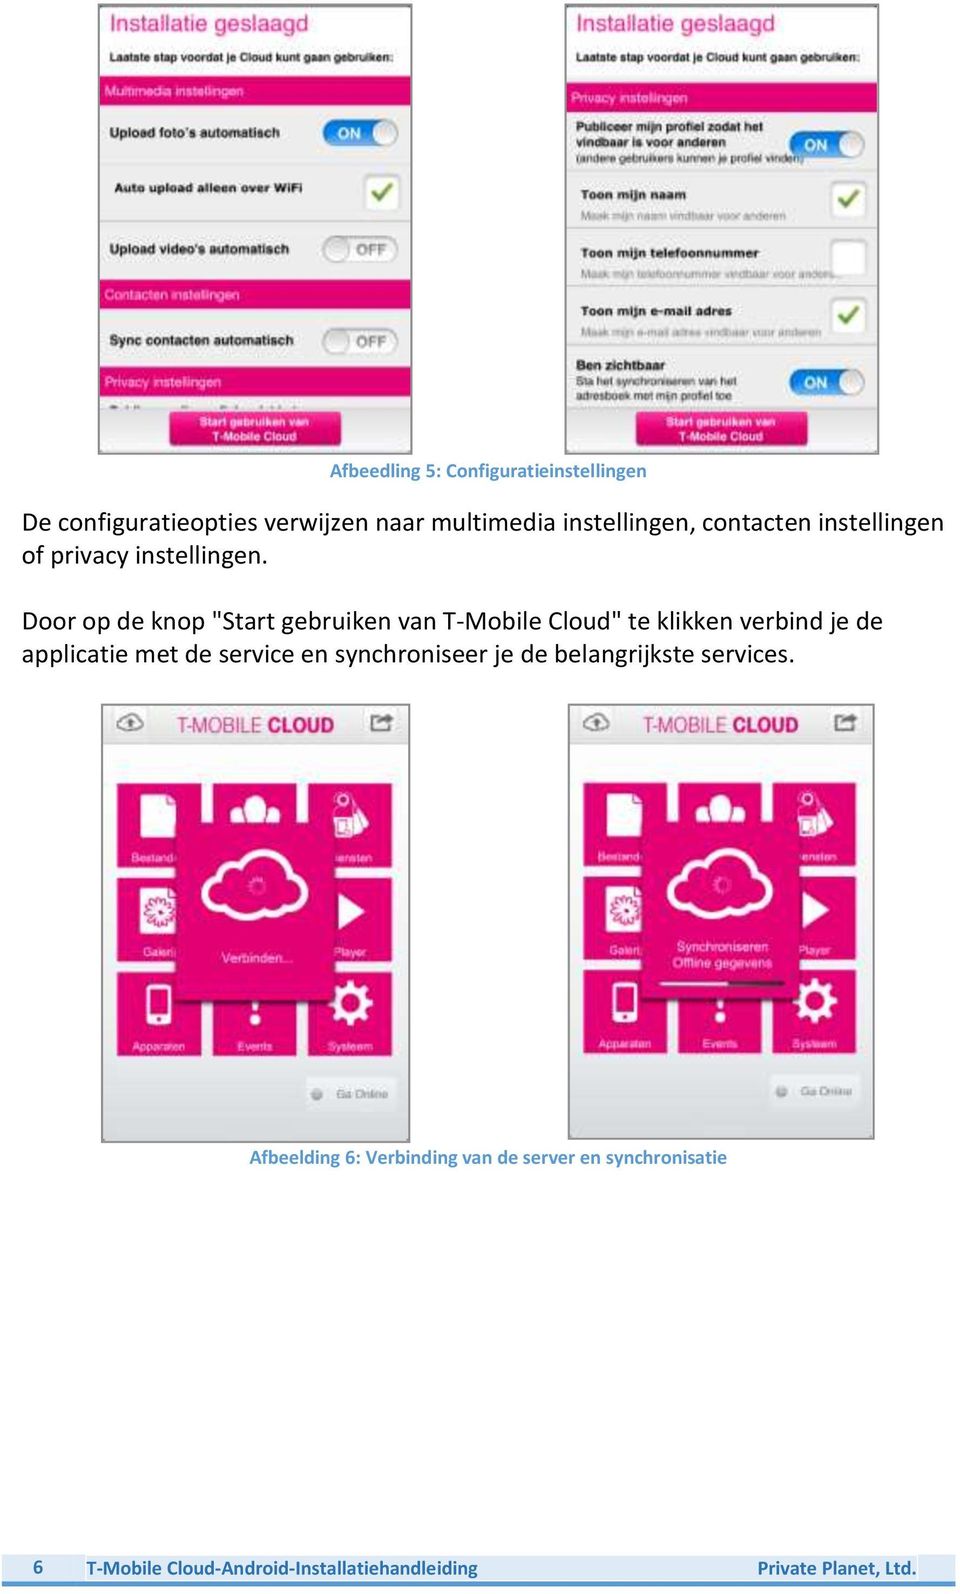 Door op de knop "Start gebruiken van T-Mobile Cloud" te klikken verbind je de applicatie met de service en